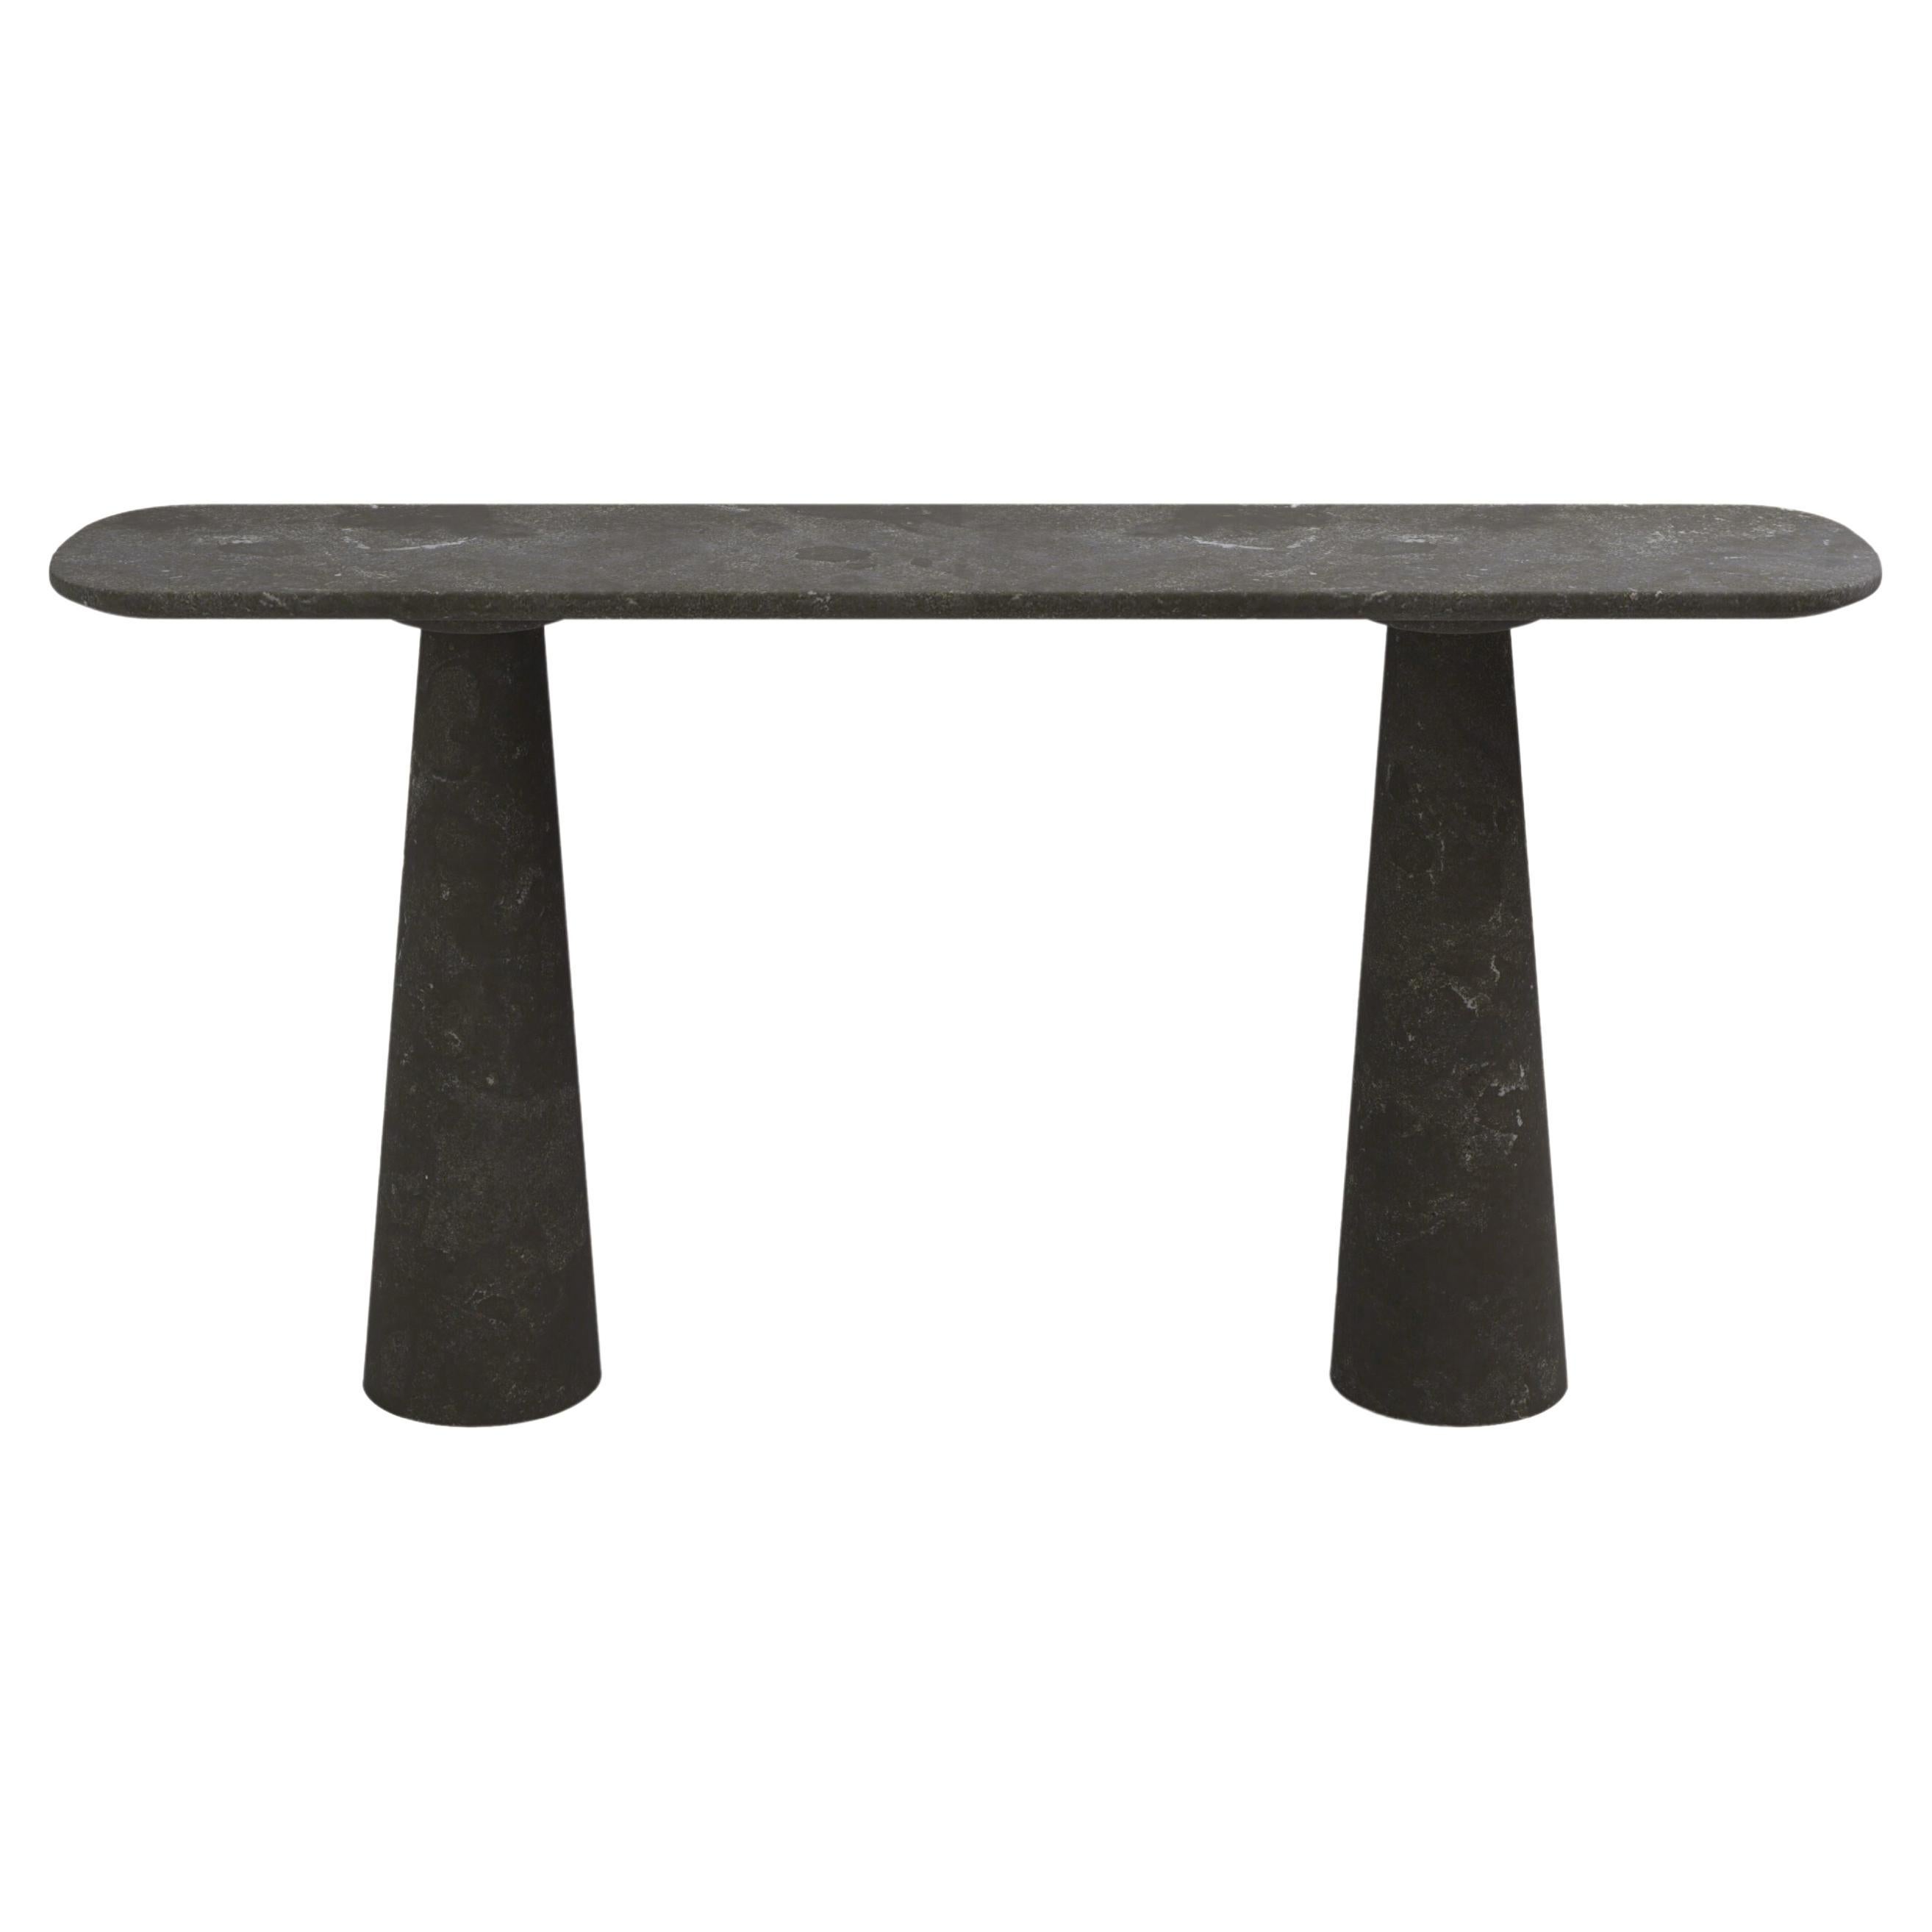 FORM(LA) Cono Console Table 72”L x 15”W x 33”H Nero Petite Granite For Sale